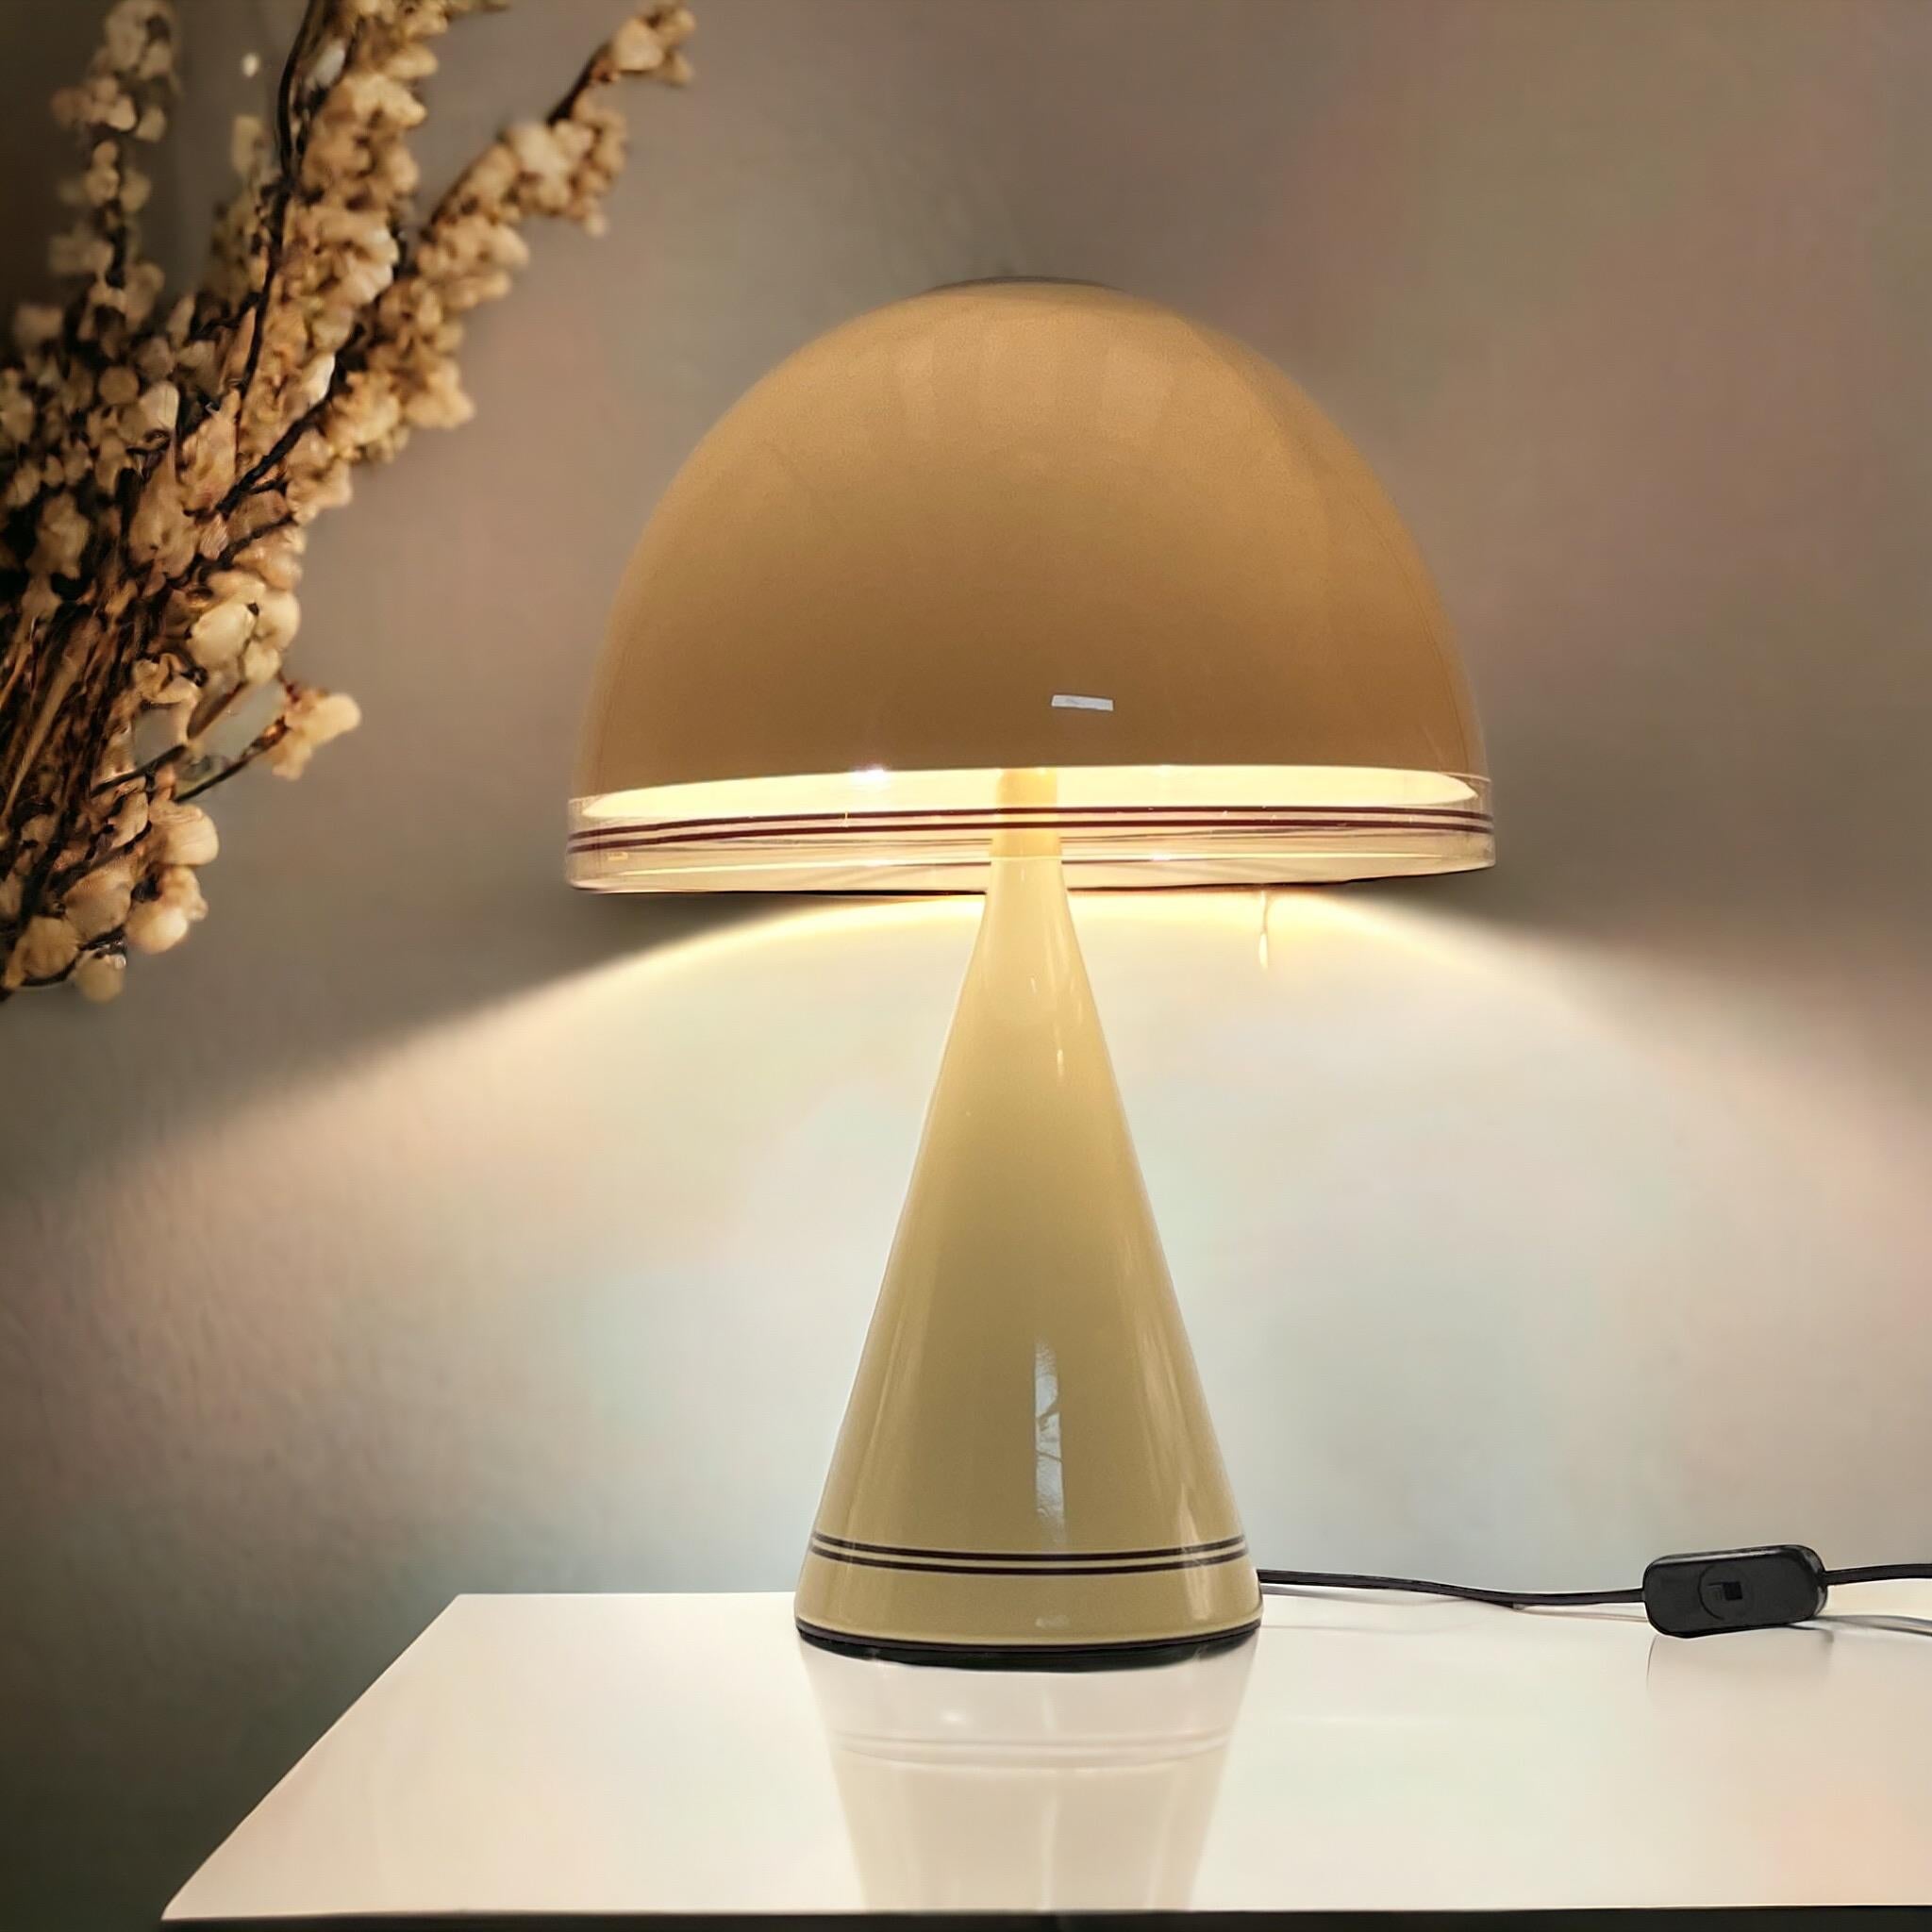 Fin du 20e siècle Iconique lampe à champignon 'Baobab' des années 70 par iGuzzini - Iconique lampe de l'ère spatiale italienne en vente